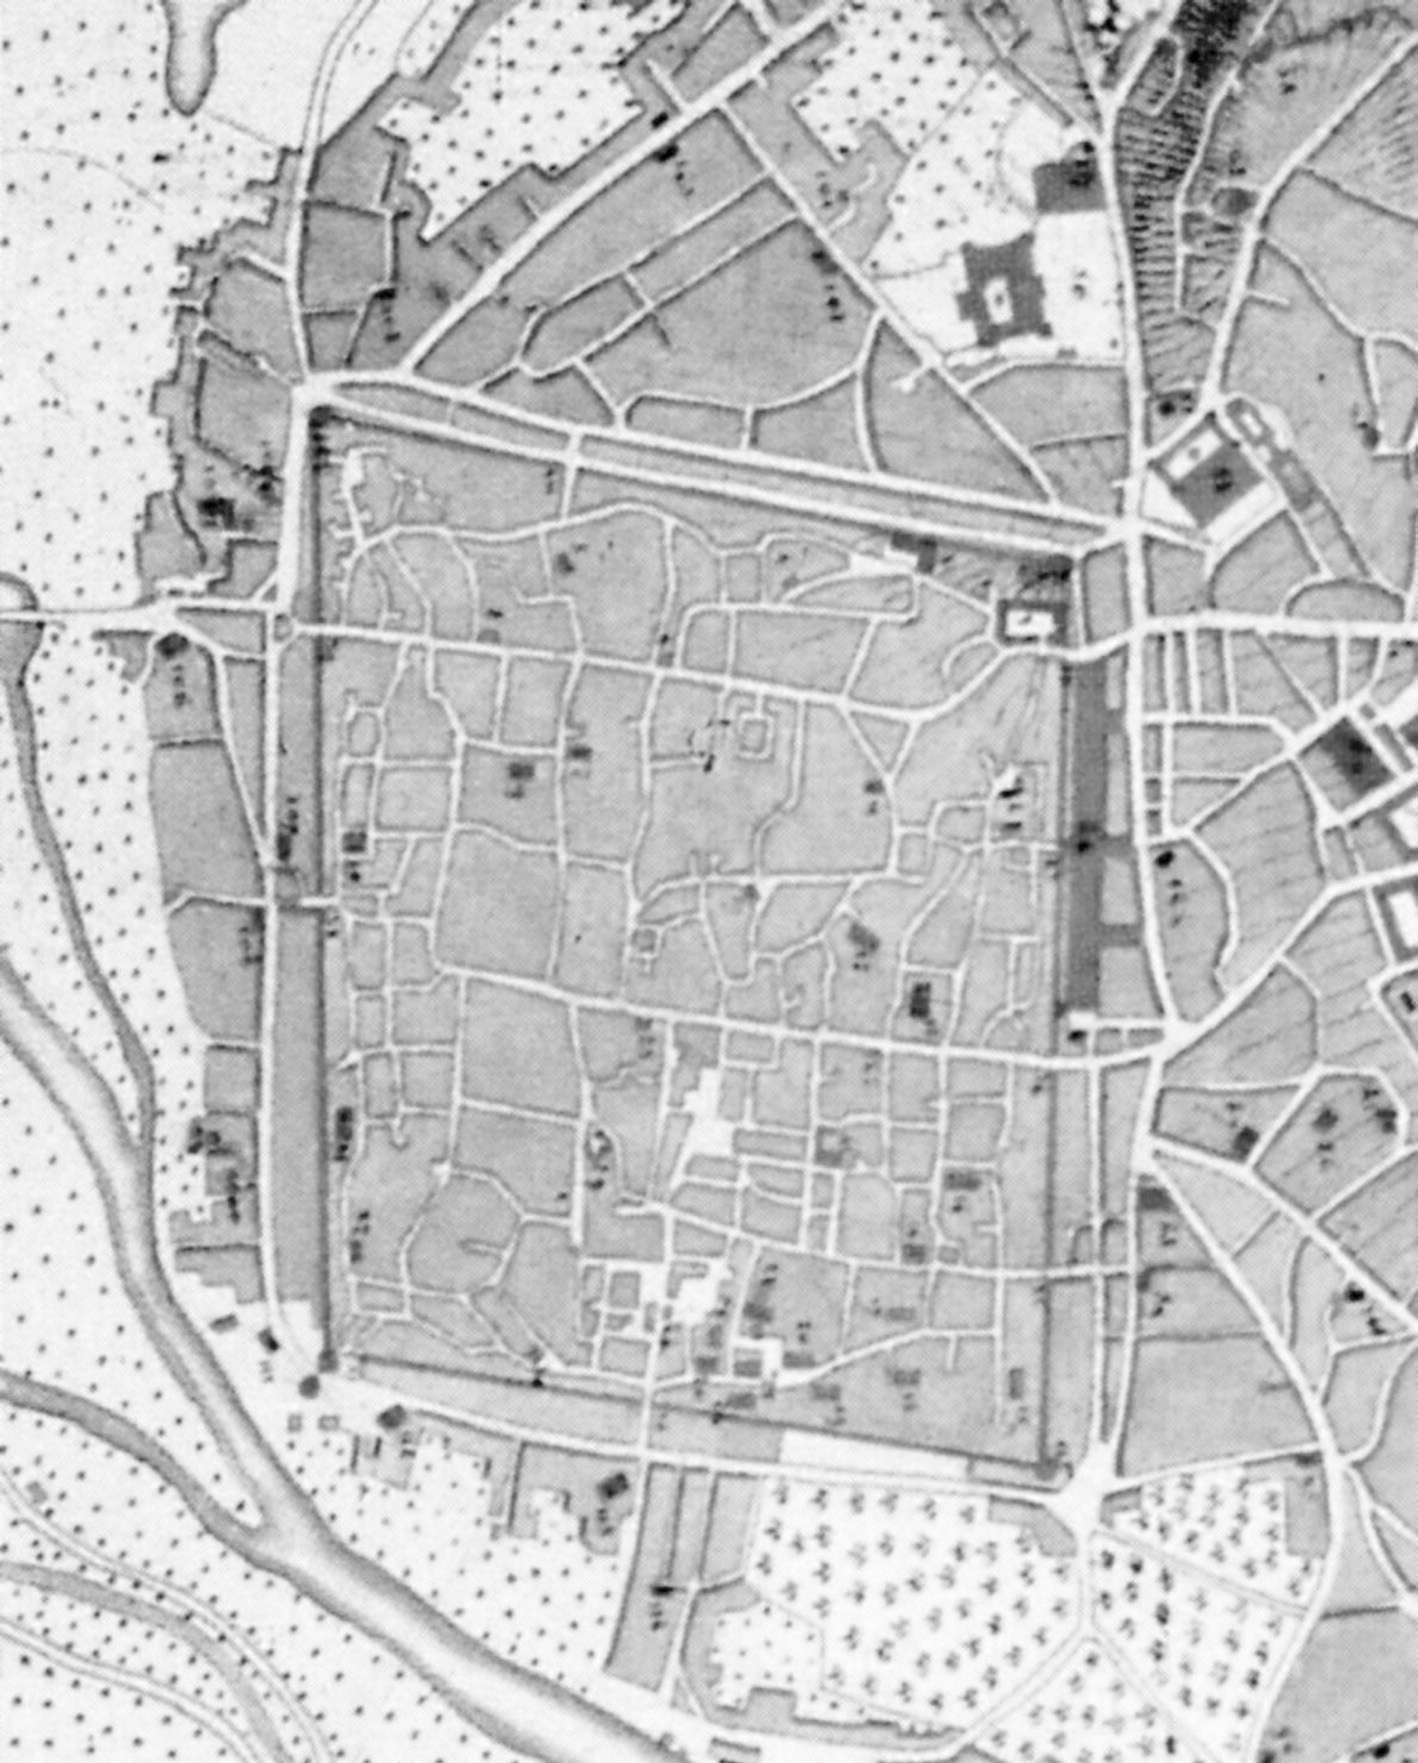 Οχυρωματικά Εργα επί Ανανεωσίμων Πηγών Υδάτων 329 Εικ. 9. Αδριανούπολη, η οχύρωση. Σχέδιο του συνταγματάρχη Osmont.